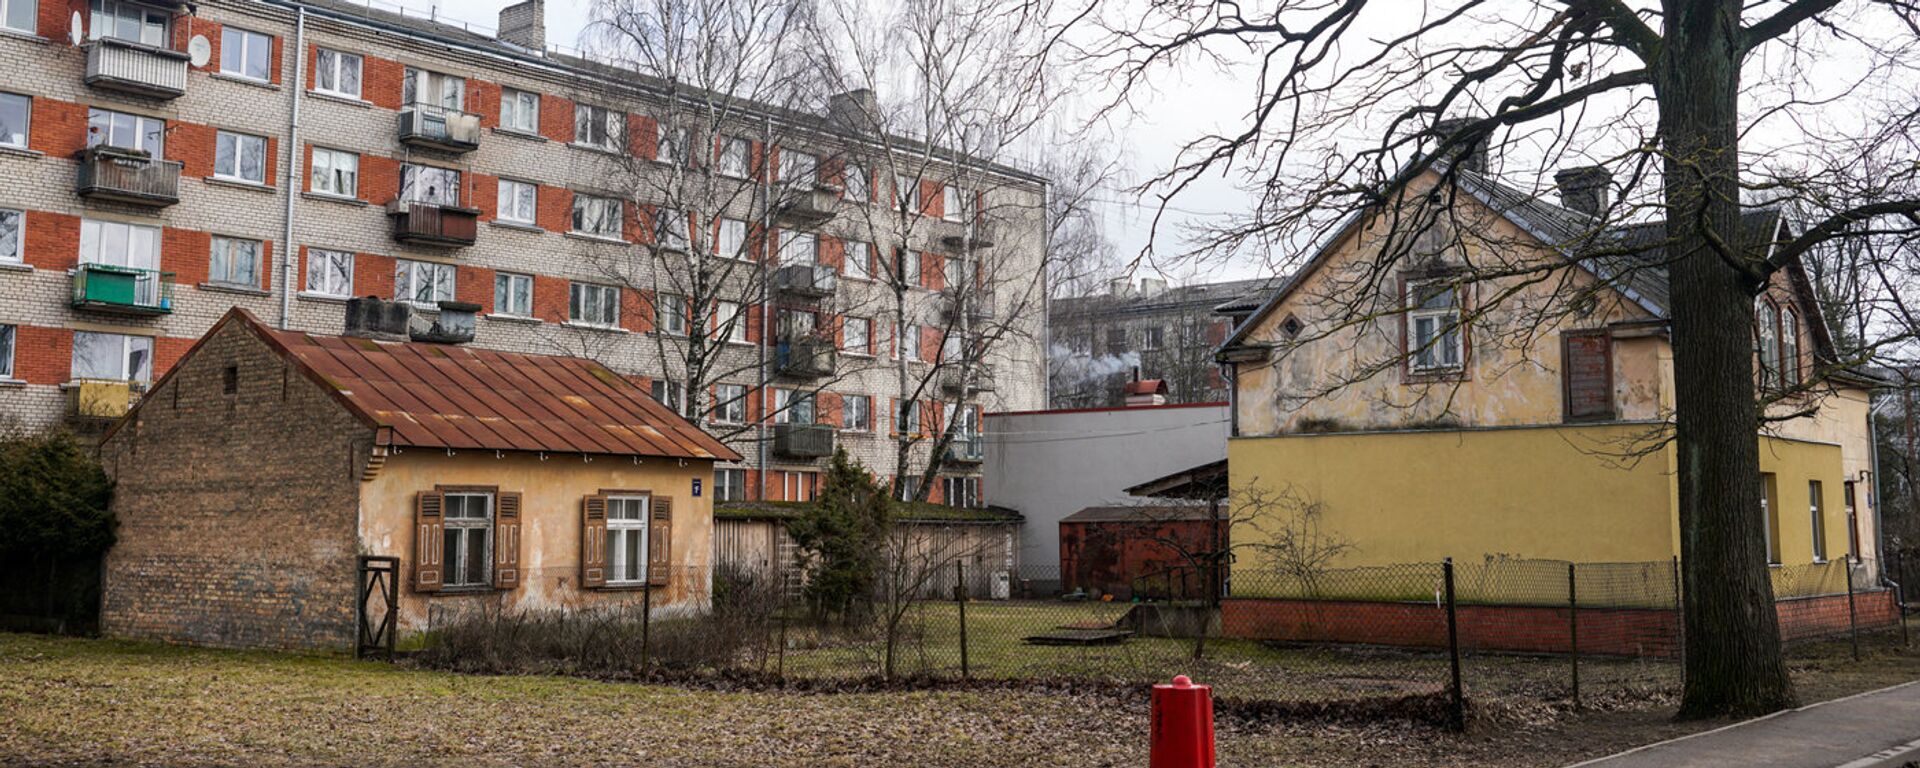 Основная застройка района Плескодале - частные дома, но встречаются и пятиэтажки - Sputnik Латвия, 1920, 10.03.2022